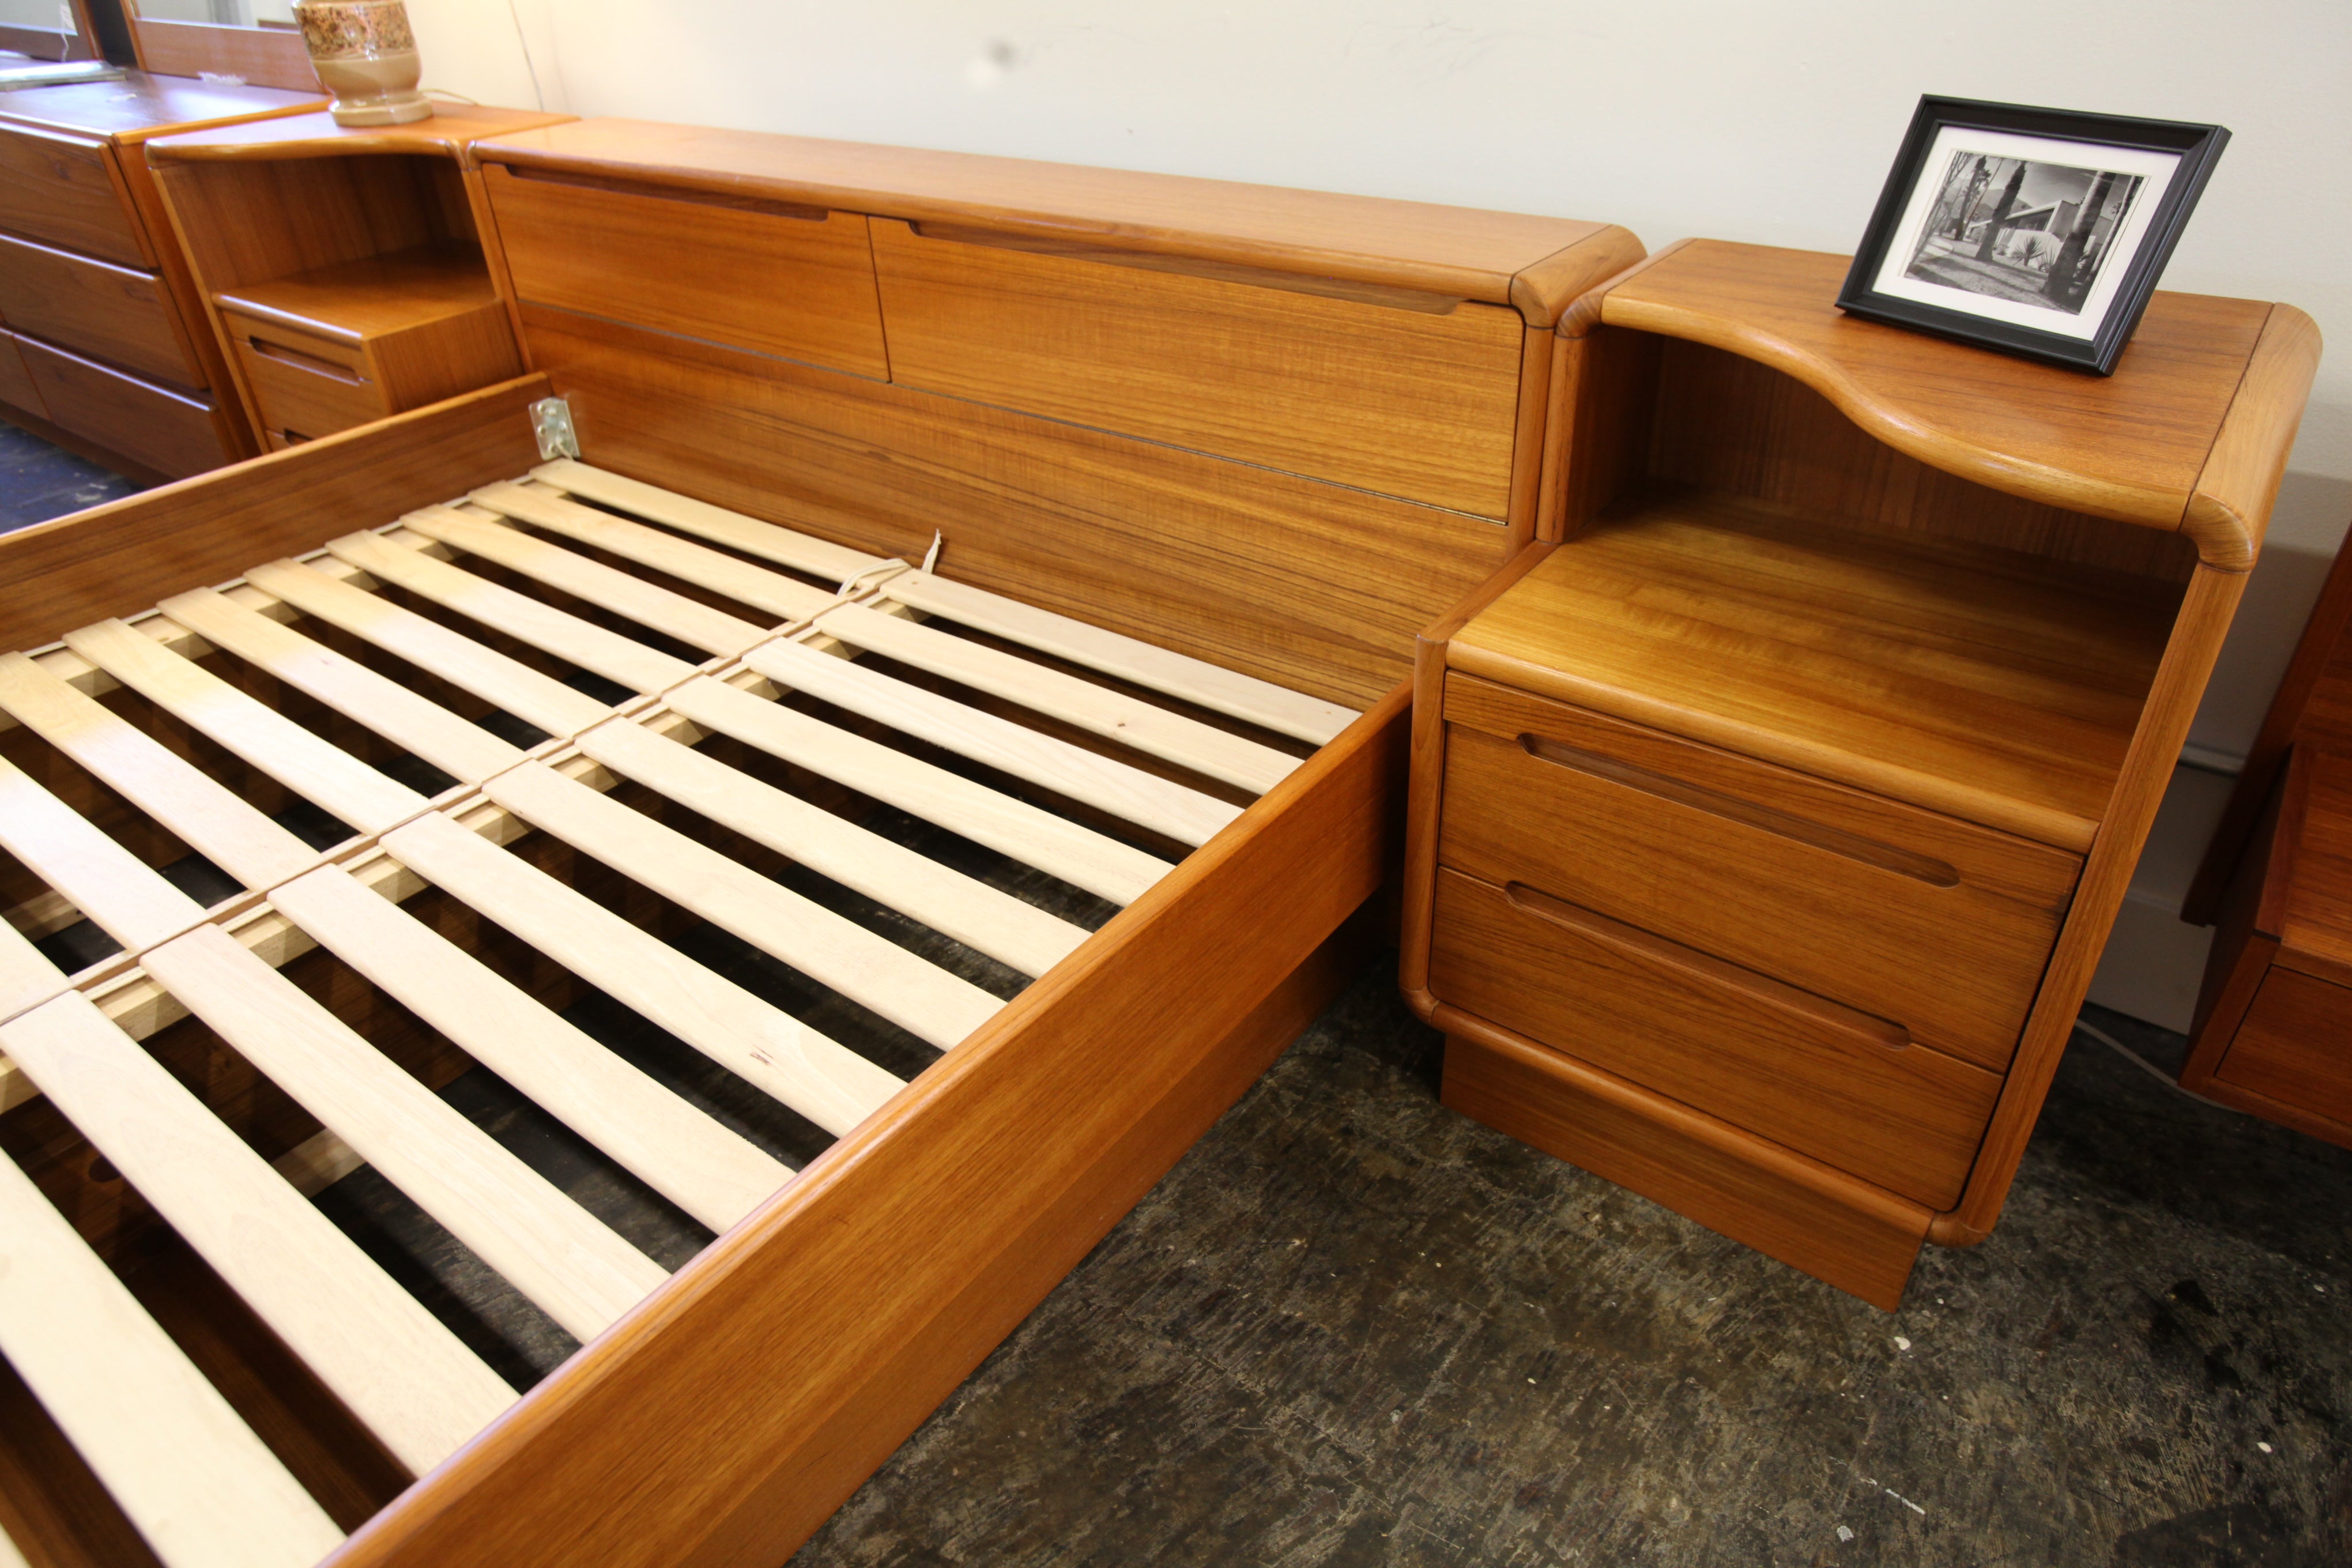 Vintage Teak Queen Bed w/ Storage & Night Stands (106.5"W x 30"H x 91"D)